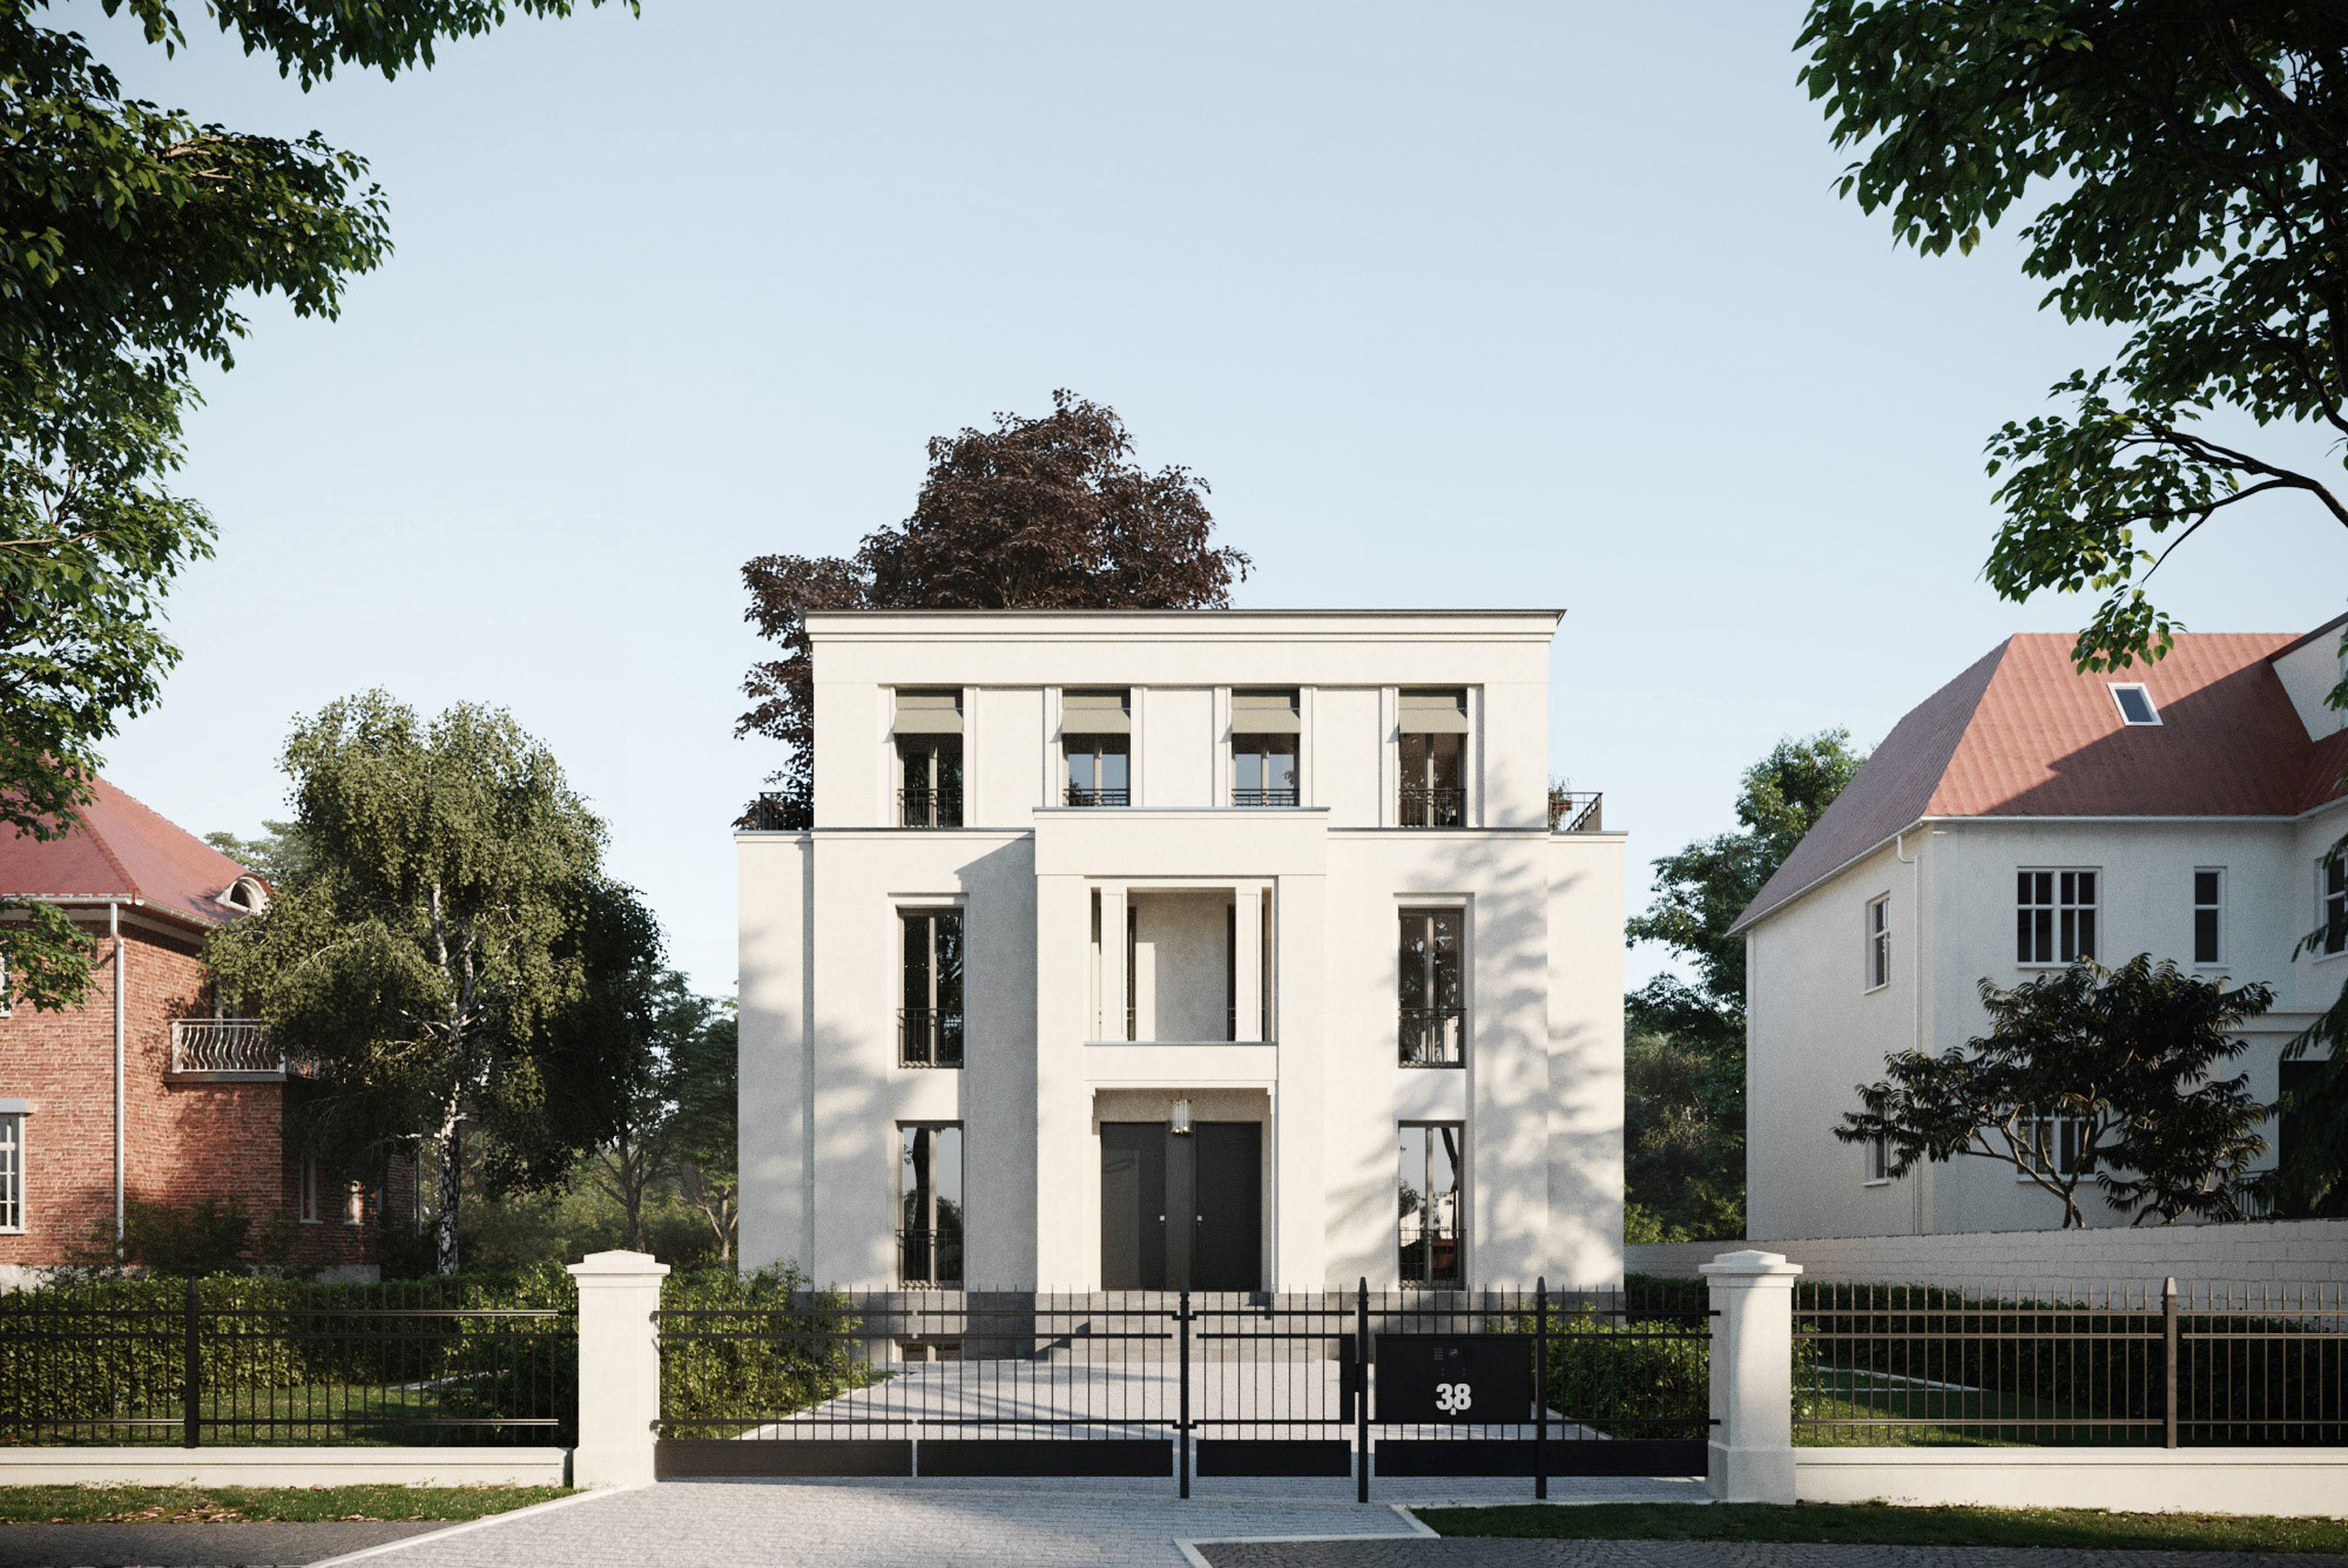 Podbielski 38 - Klassische Stadtvilla mit modernen Eigentumswohnungen in Berlin-Dahlem - Zeitlose, klassische Architektur - Ruhiges Wohnen in zentraler Lage